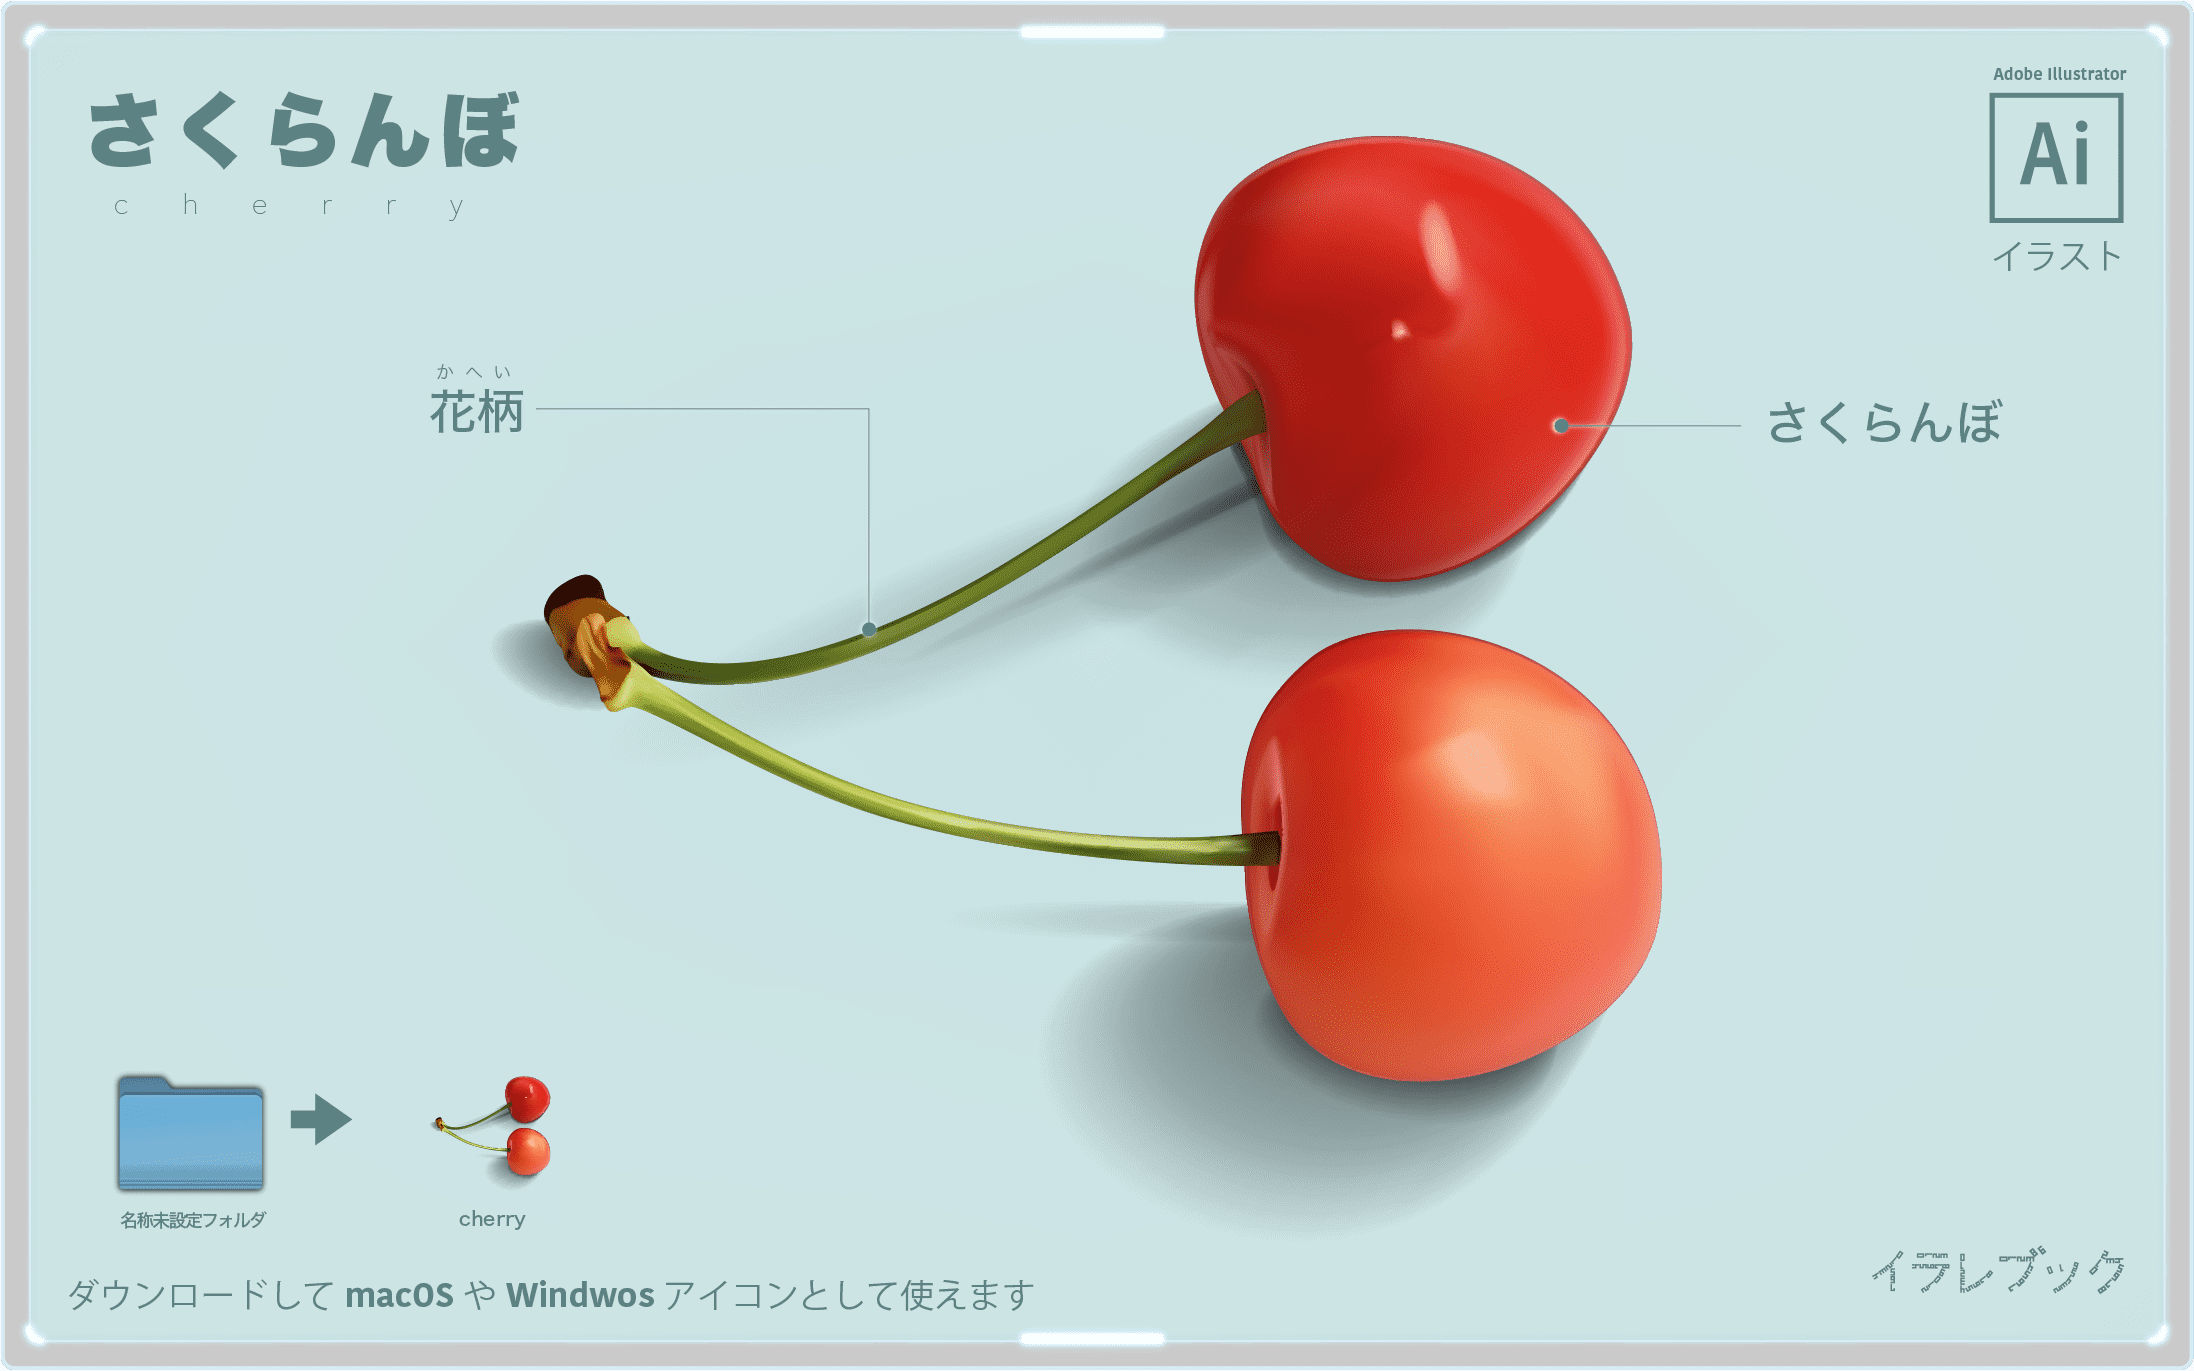 さくらんぼ イラスト 品種 歴史 栄養と美味しい選び方を画像で説明 イラレマンガ Cherry